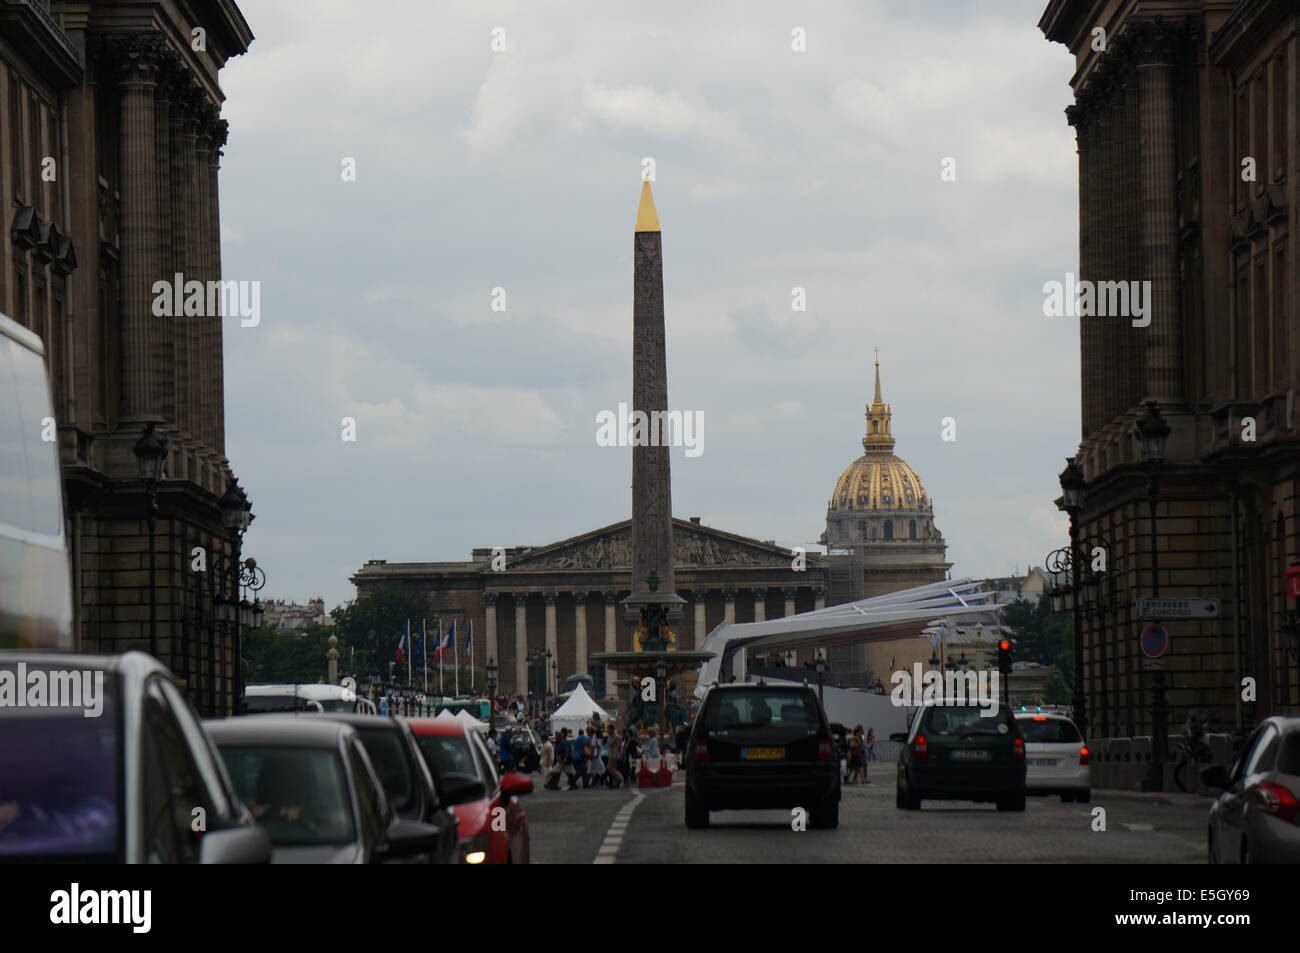 Place de la concorde, l'Obélisque de Louxor, une colonne de granit jaune or avec une pyramide à feuilles, la voiture en face Banque D'Images